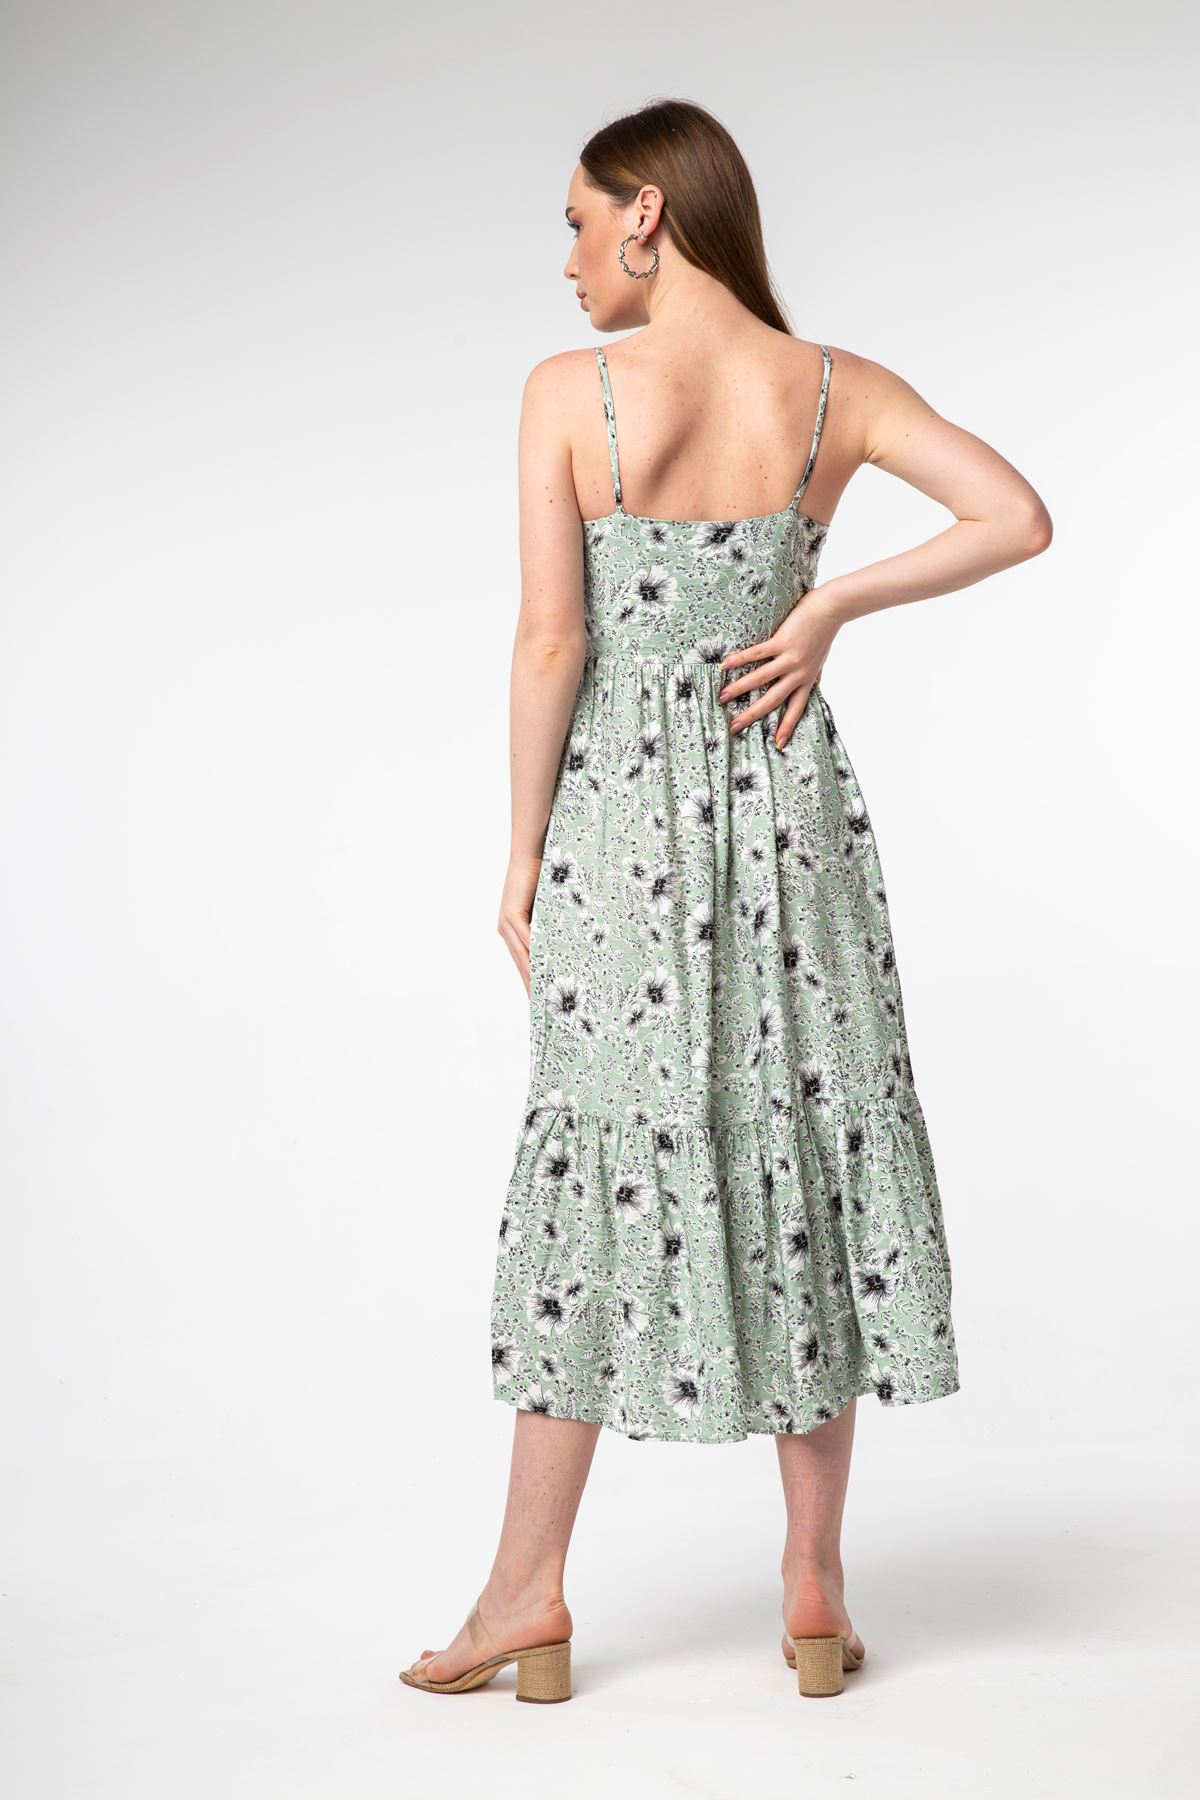 Aerobin Empirme Kumaş İp Askılı Tam Kalıp Çiçek Desenli Kadın Elbise-Mint